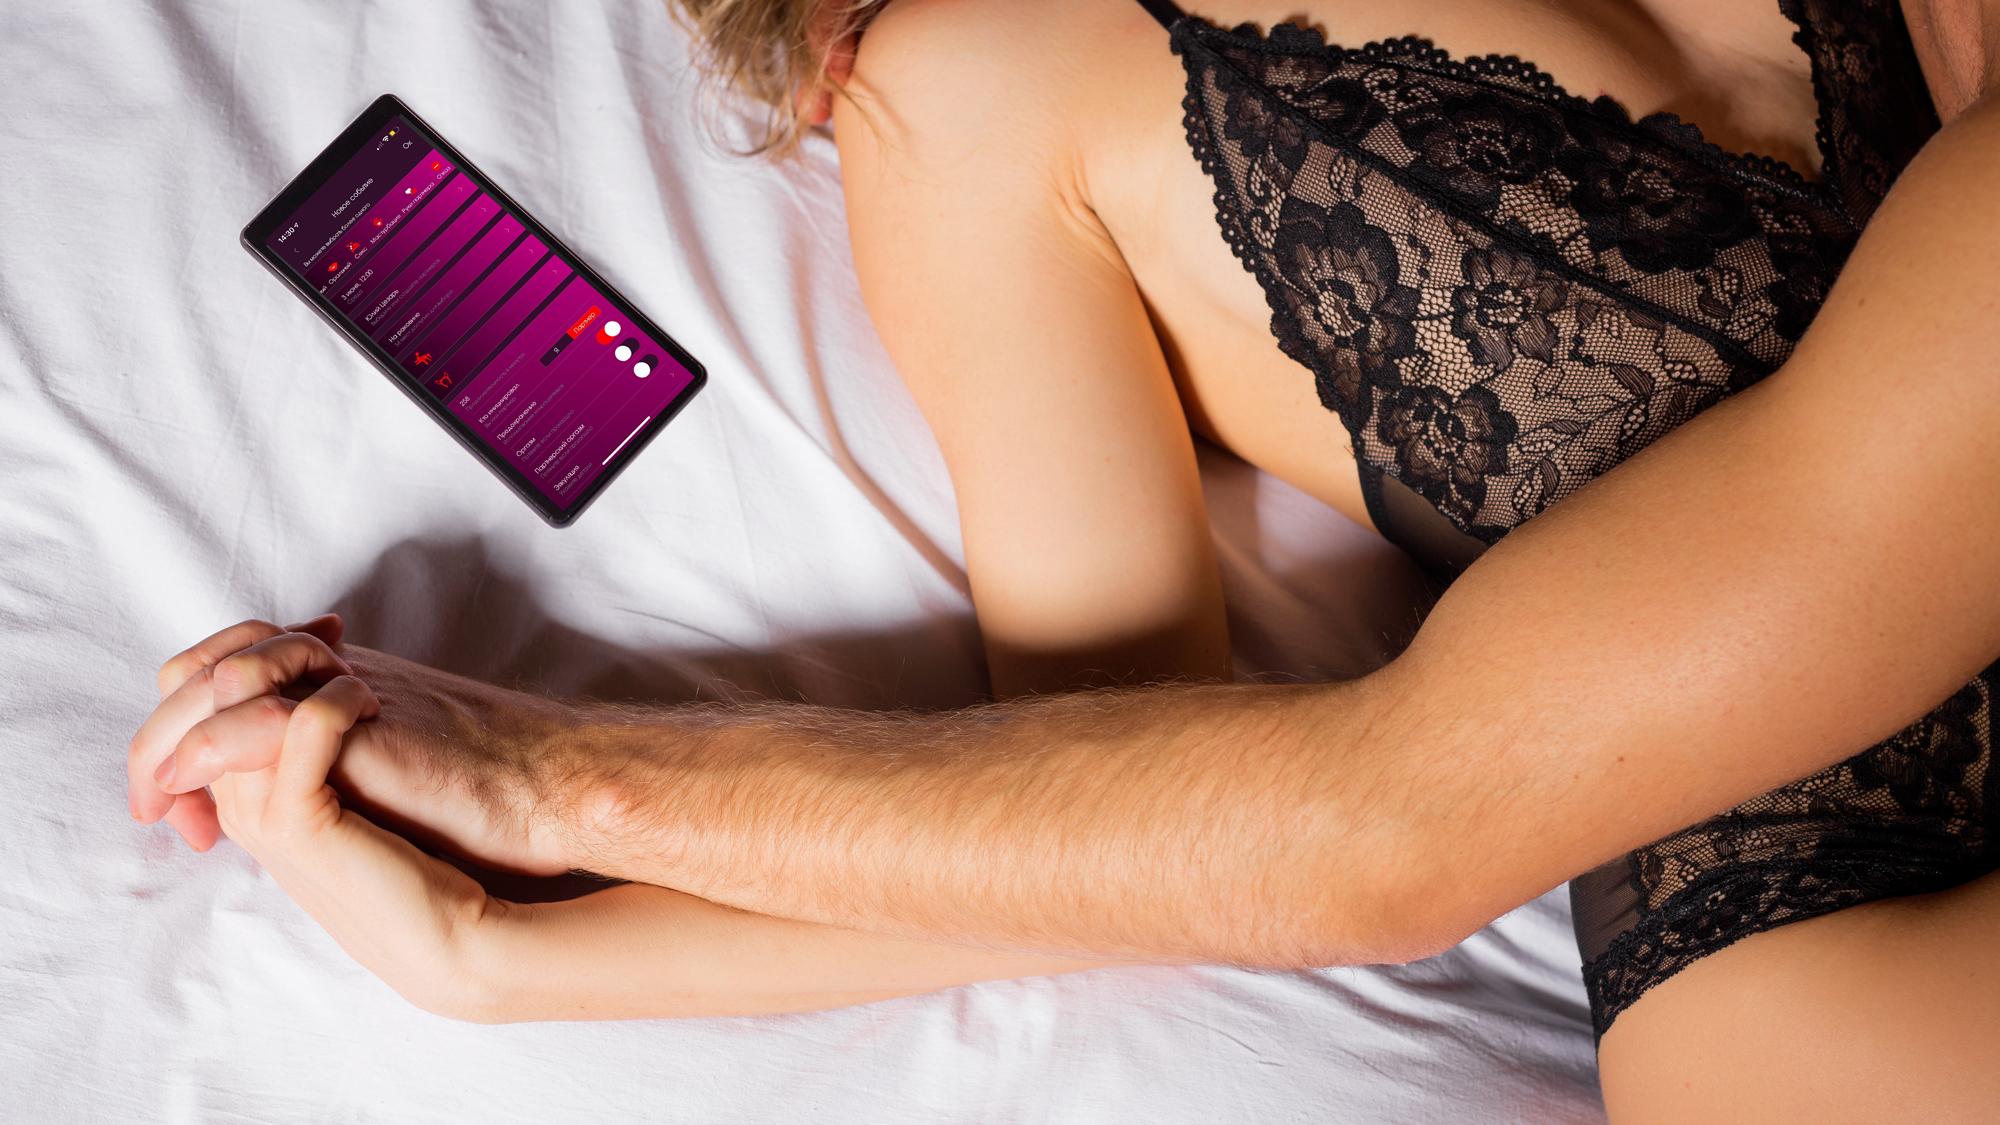 Решила Разнообразить Своё Время Провождения - Смотреть Порно Онлайн